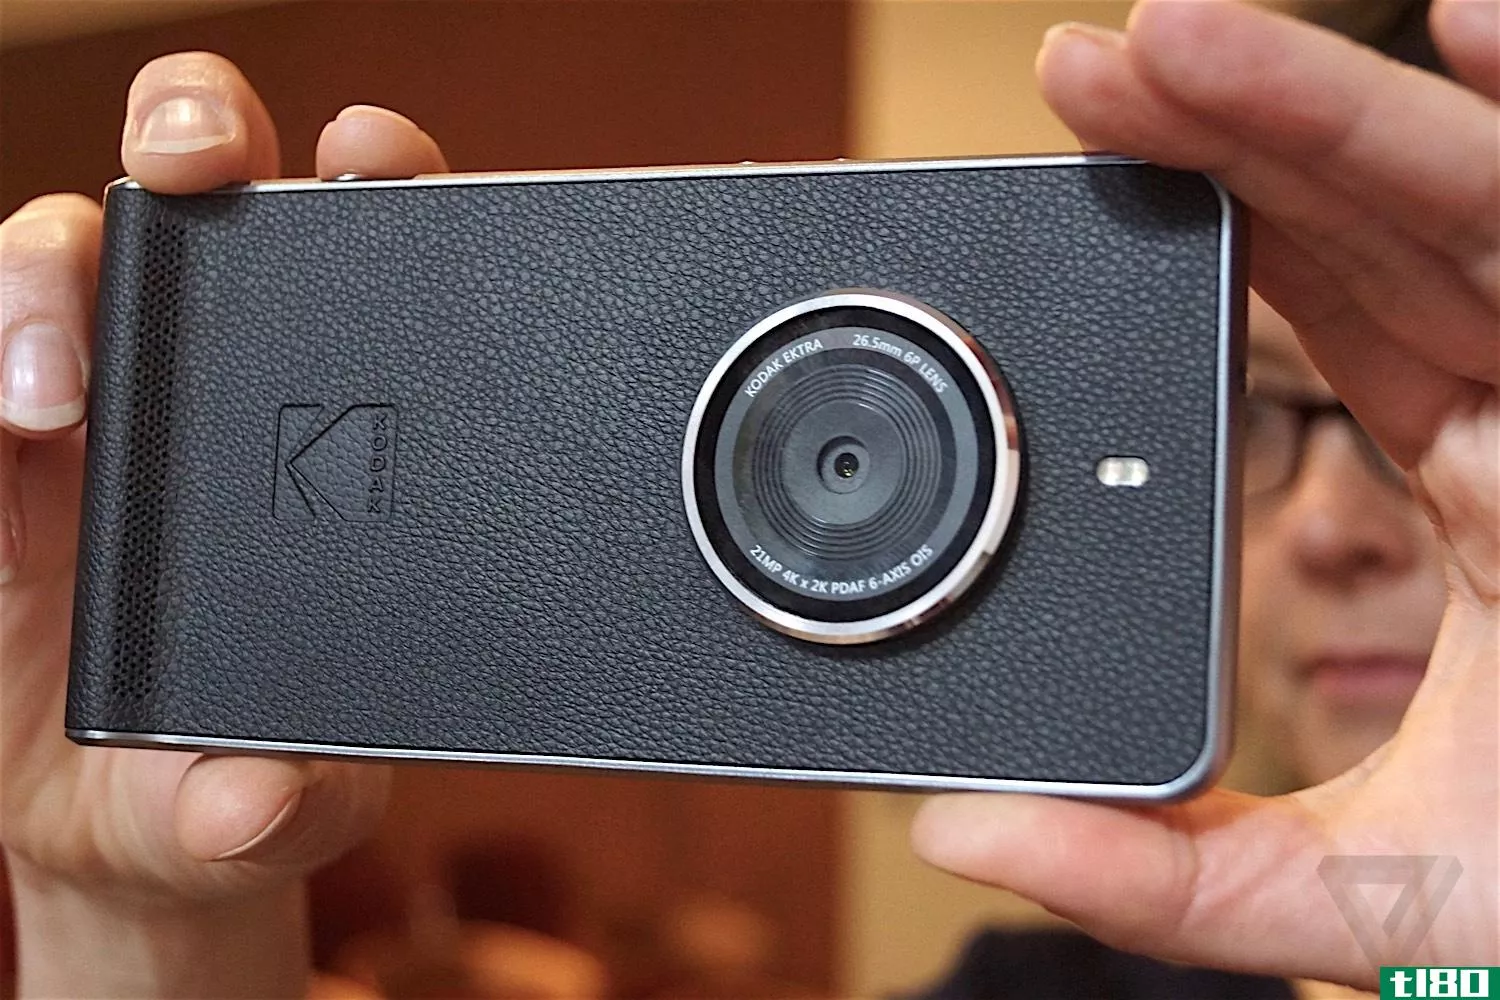 柯达的新款ektra智能手机宁愿只是一部相机